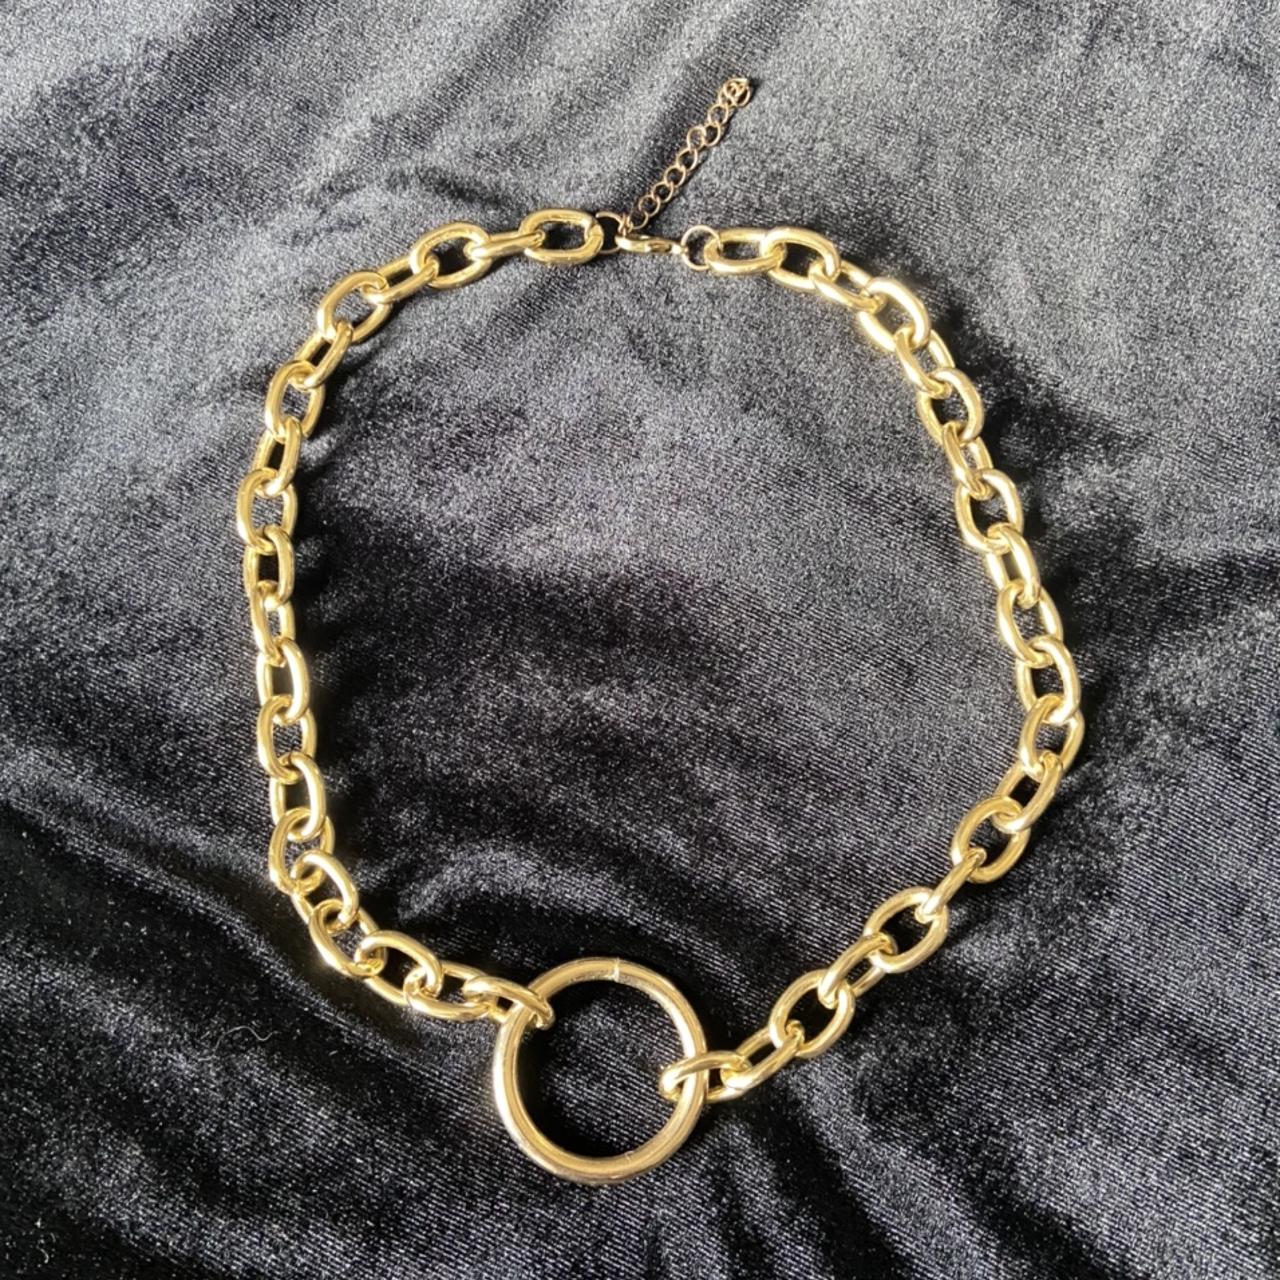 Gold o ring choker necklace. Never worn, adjustable... - Depop